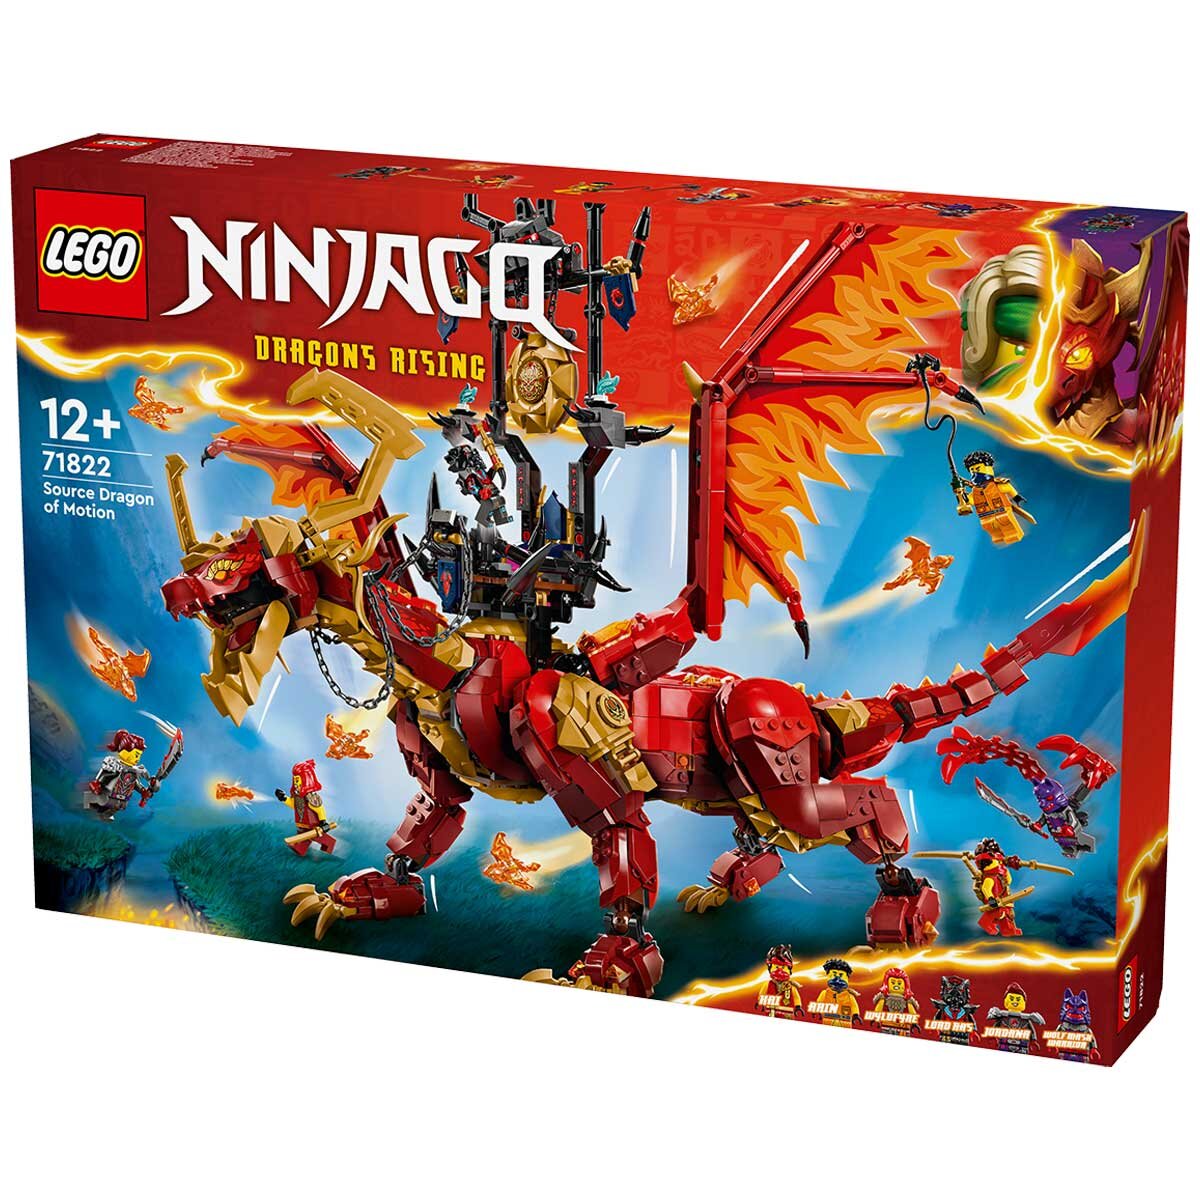 LEGO Ninjago Source Dragon Of Motion 71822